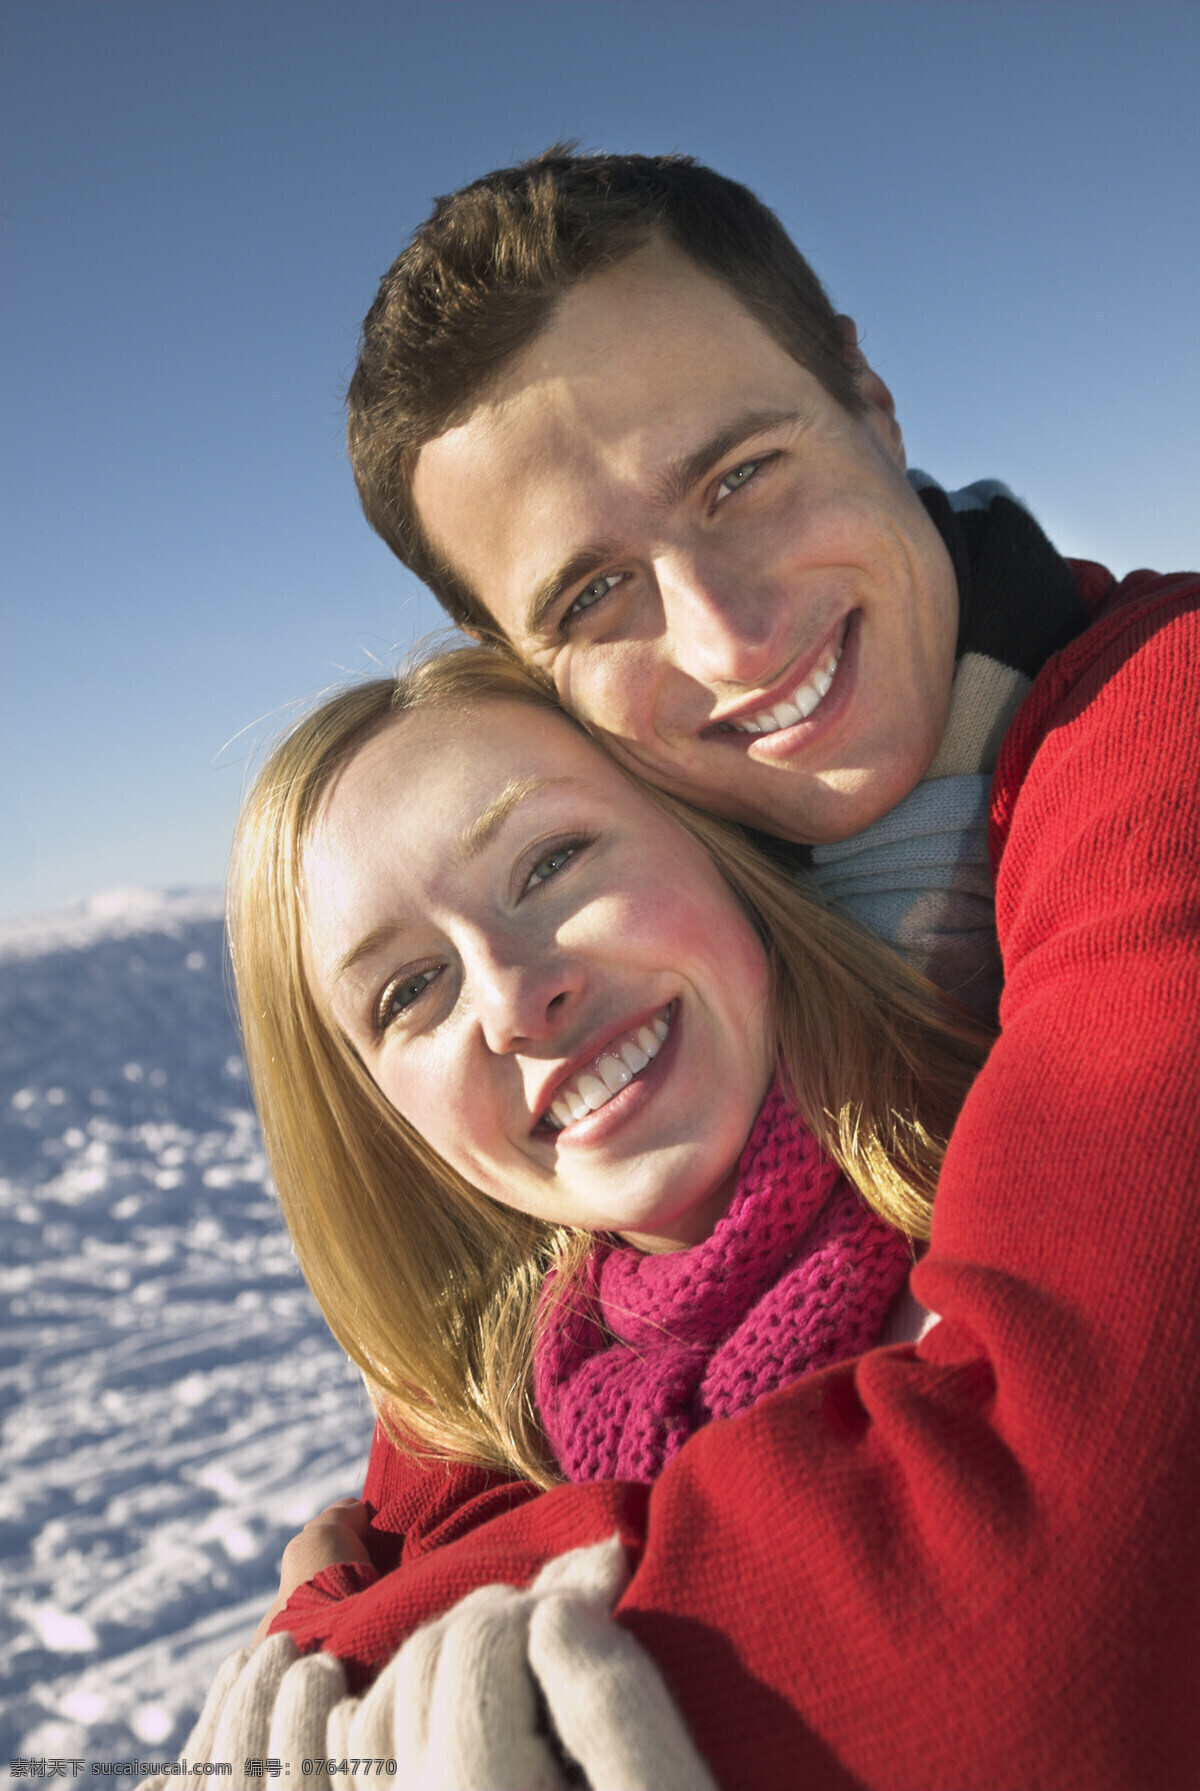 搂 一块 幸福 情侣 搂着 雪地 外国人物 冬天 生活人物 人物图片